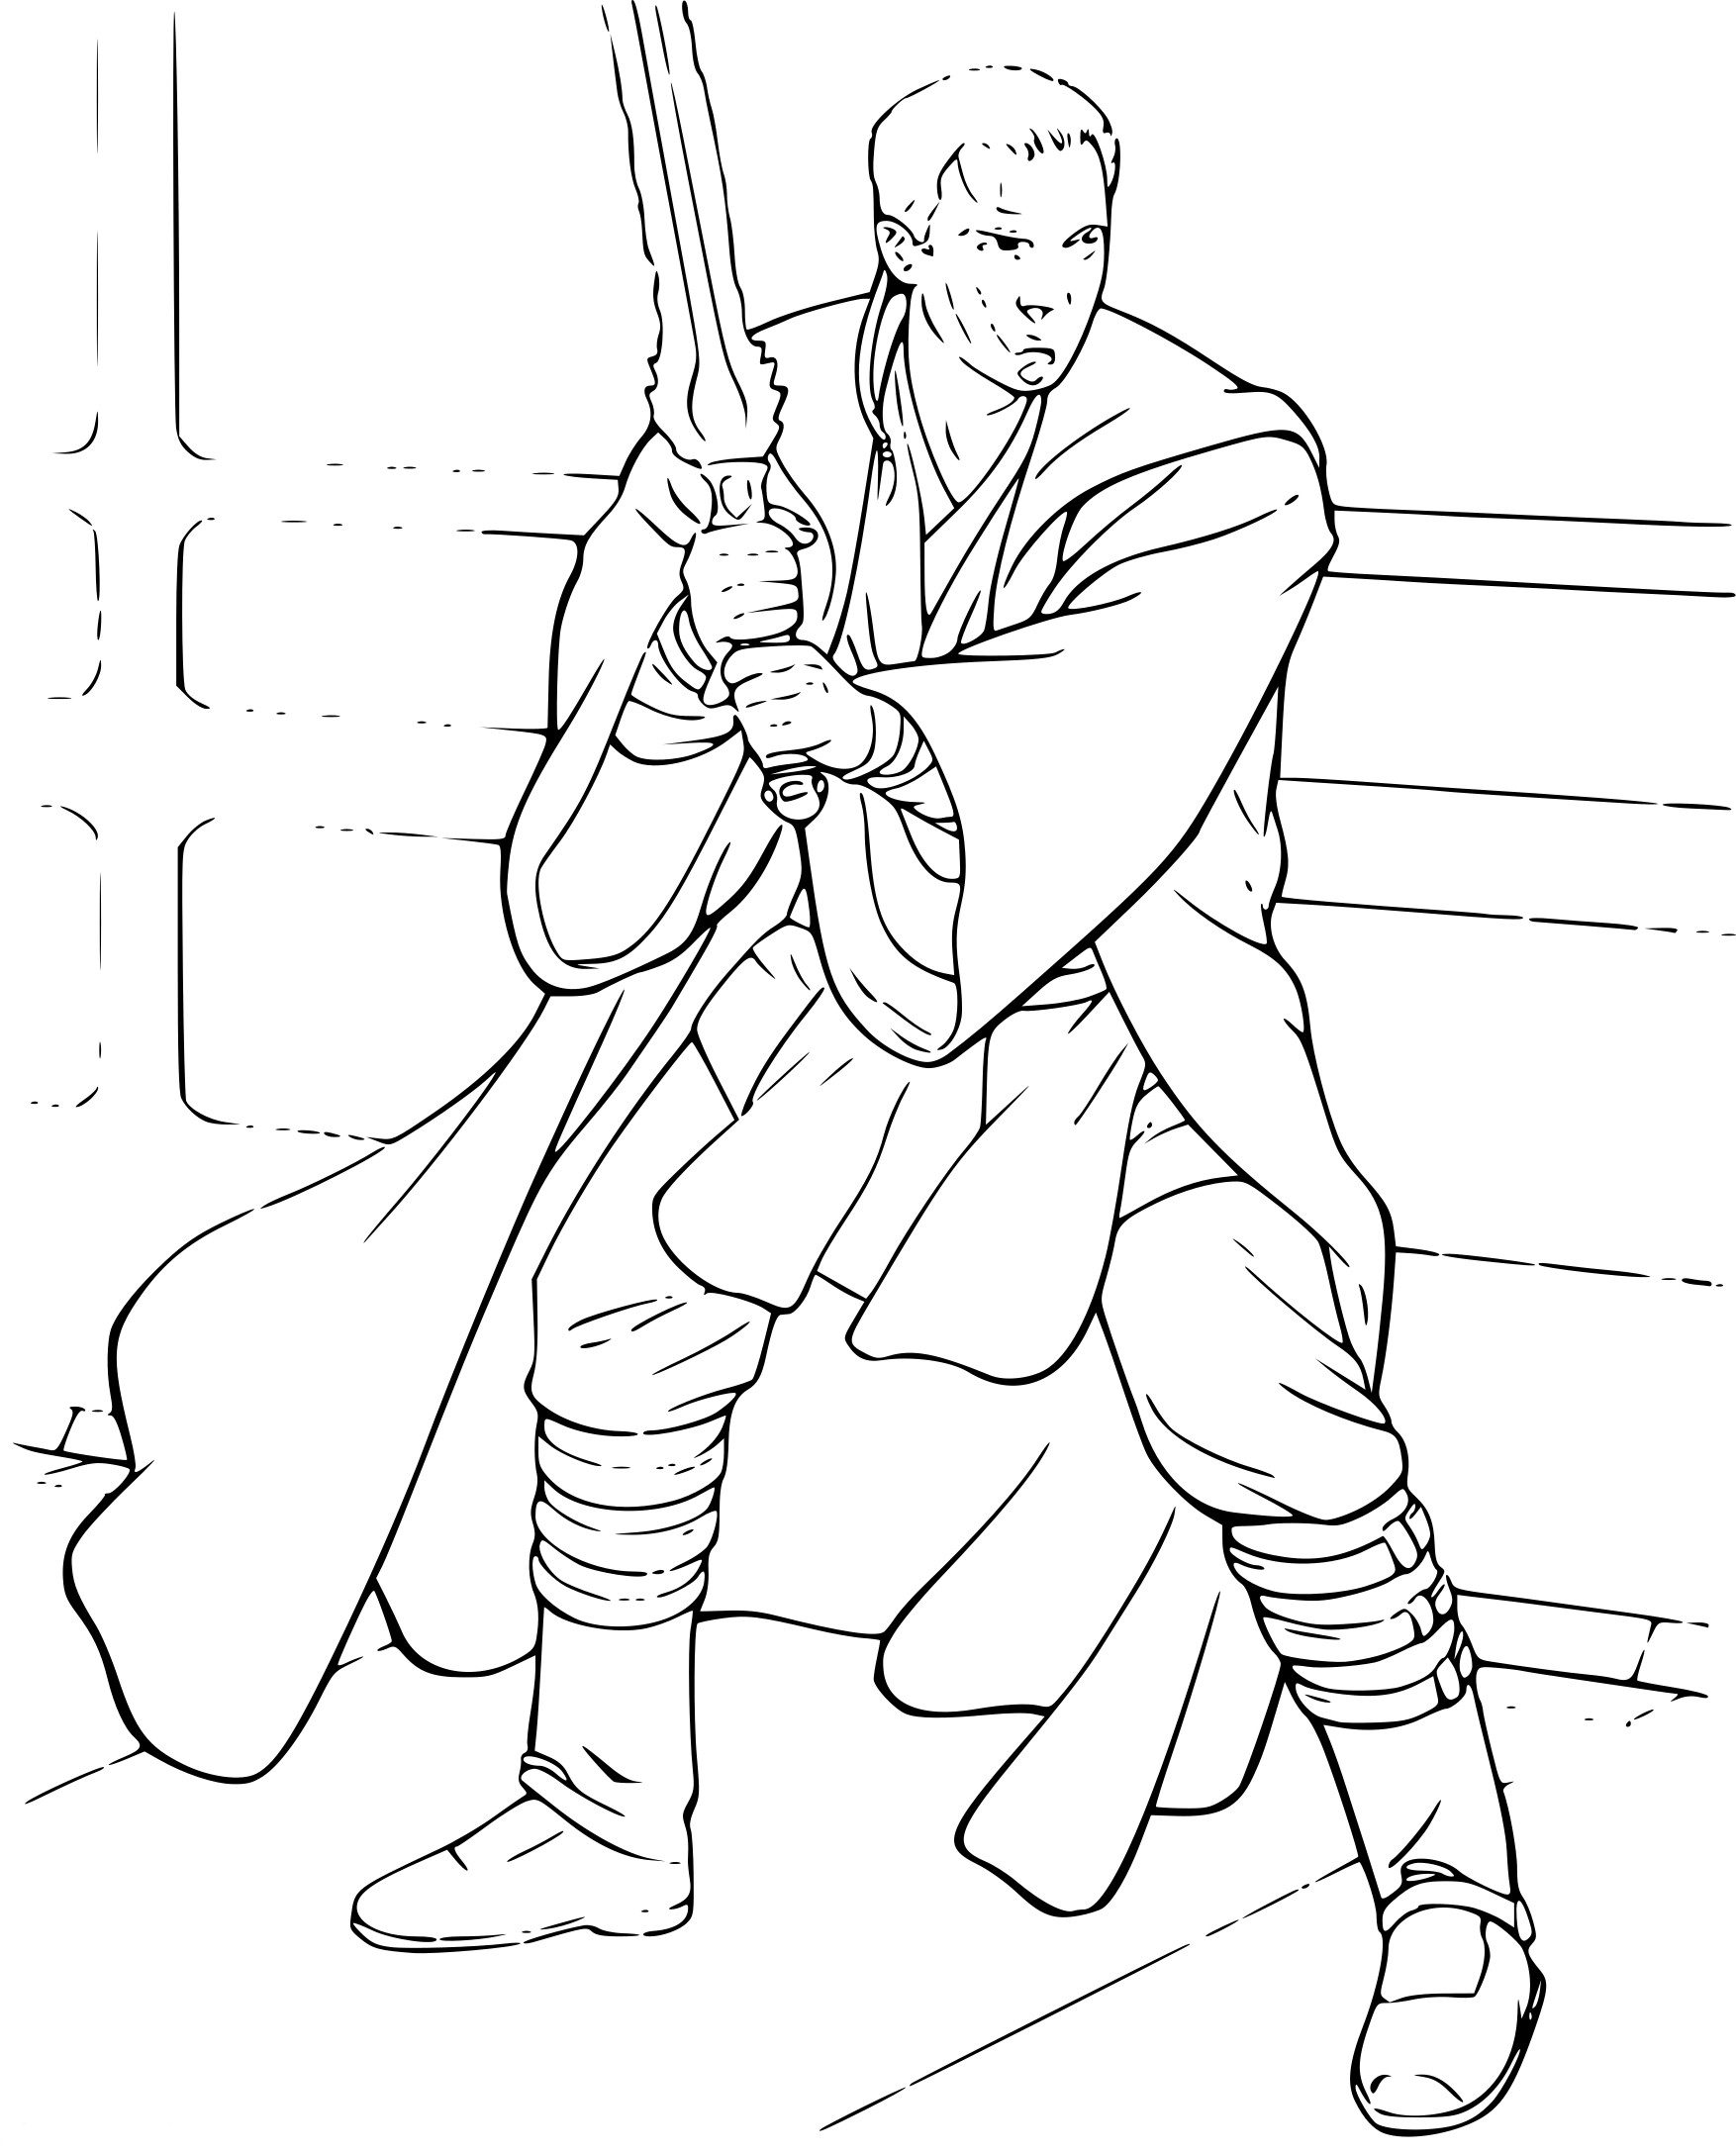 Obi Wan Kenobi coloring page - free ...